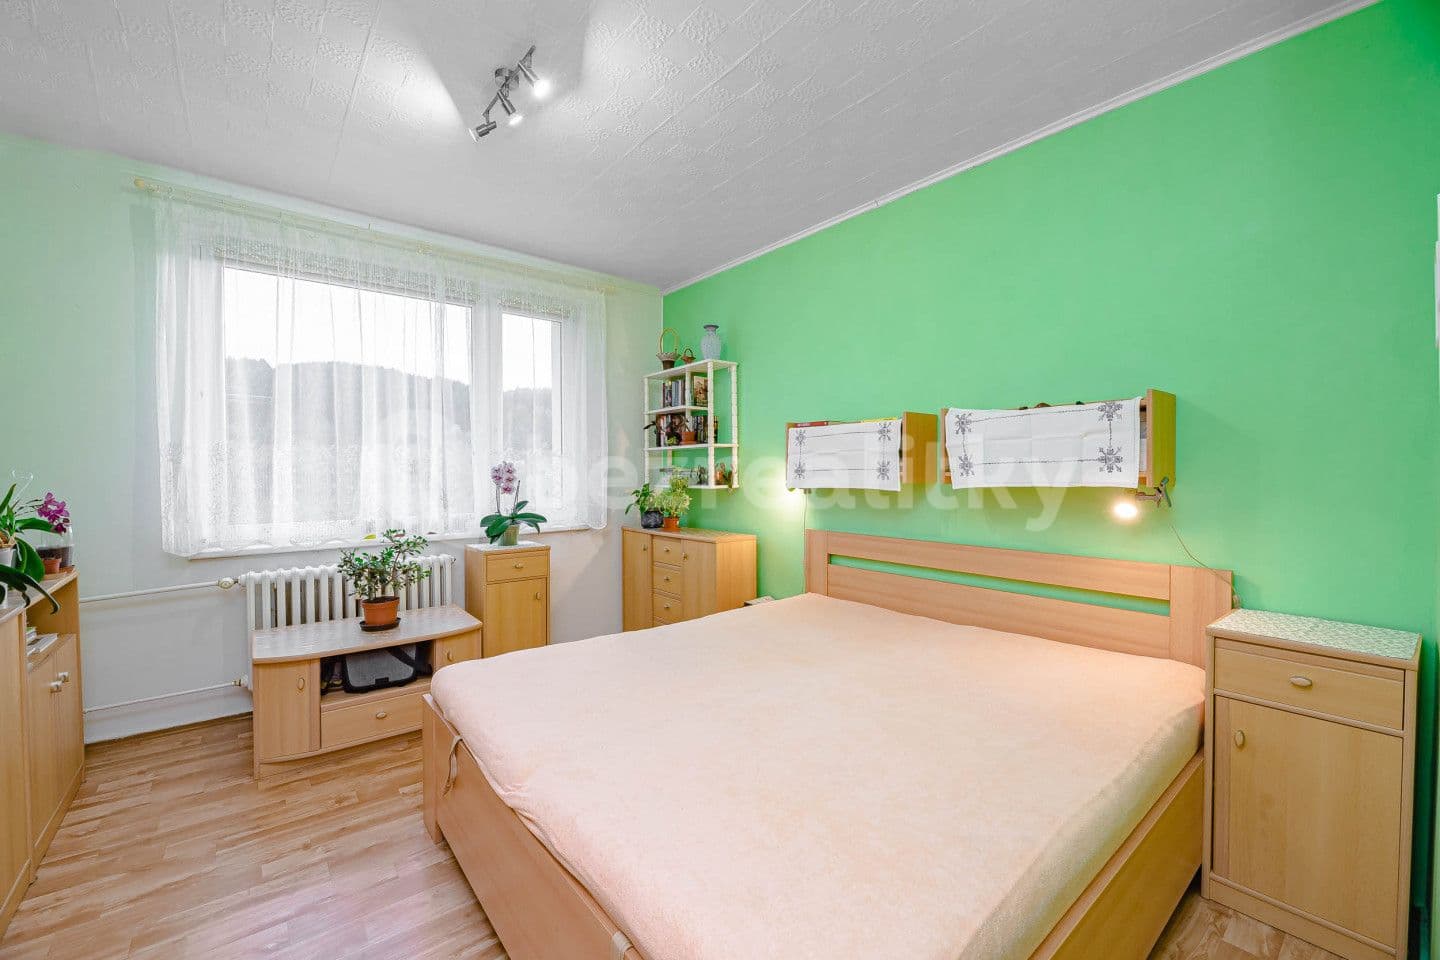 3 bedroom flat for sale, 78 m², Jilemnického, Ústí nad Orlicí, Pardubický Region